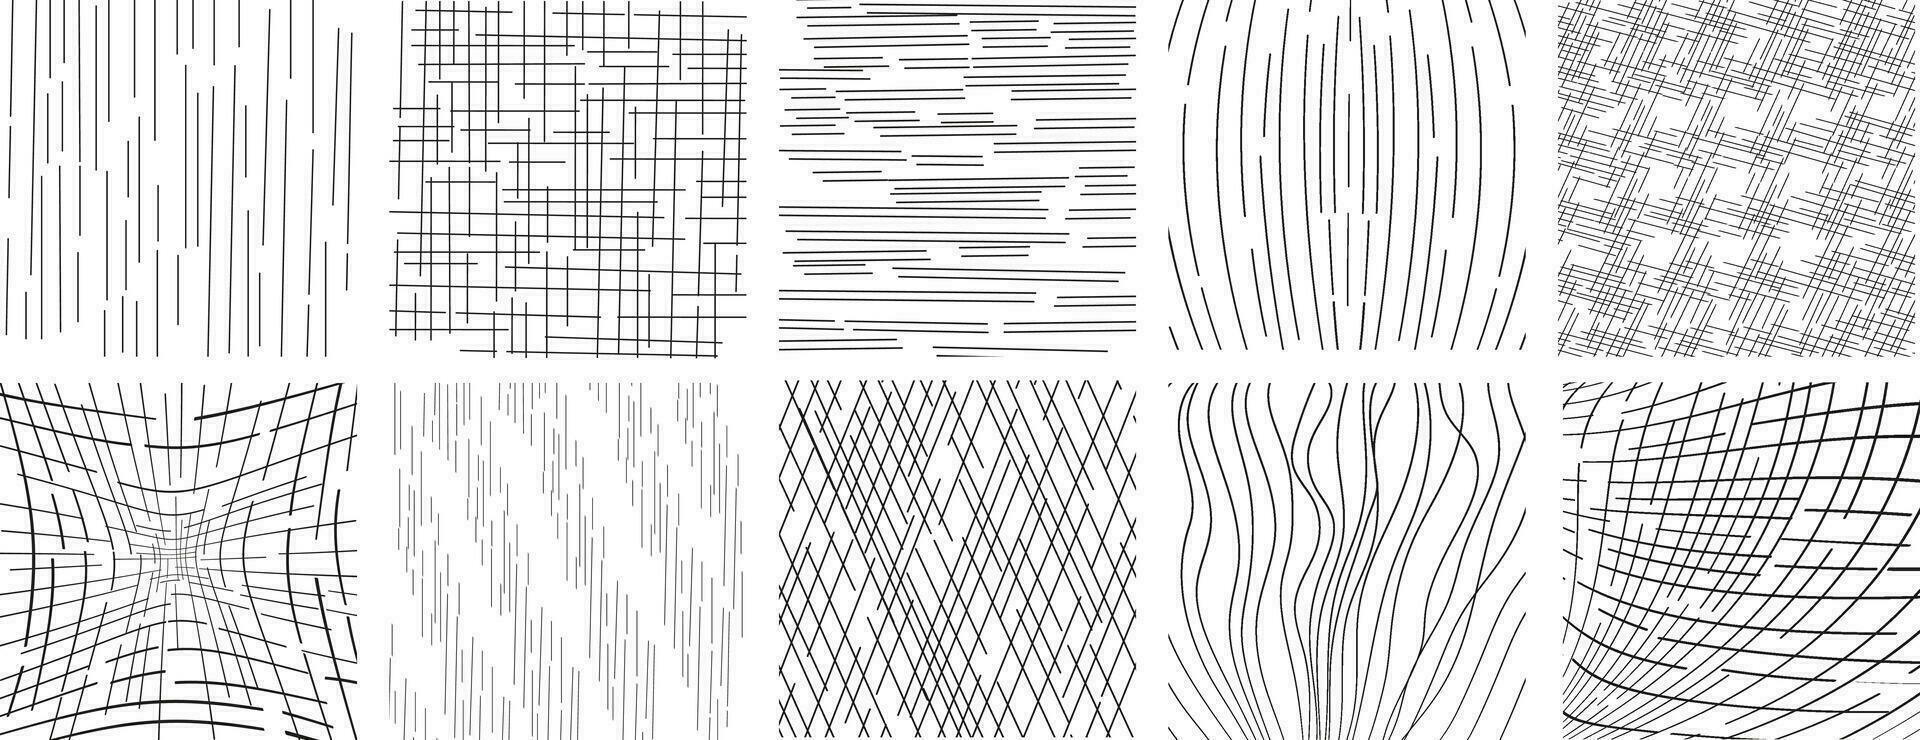 samling av hand dragen en sömlös vektor bakgrund med oärlig dots.vector klottrar, rutnät med oregelbunden, horisontell och vågig slag, doodle mönster.